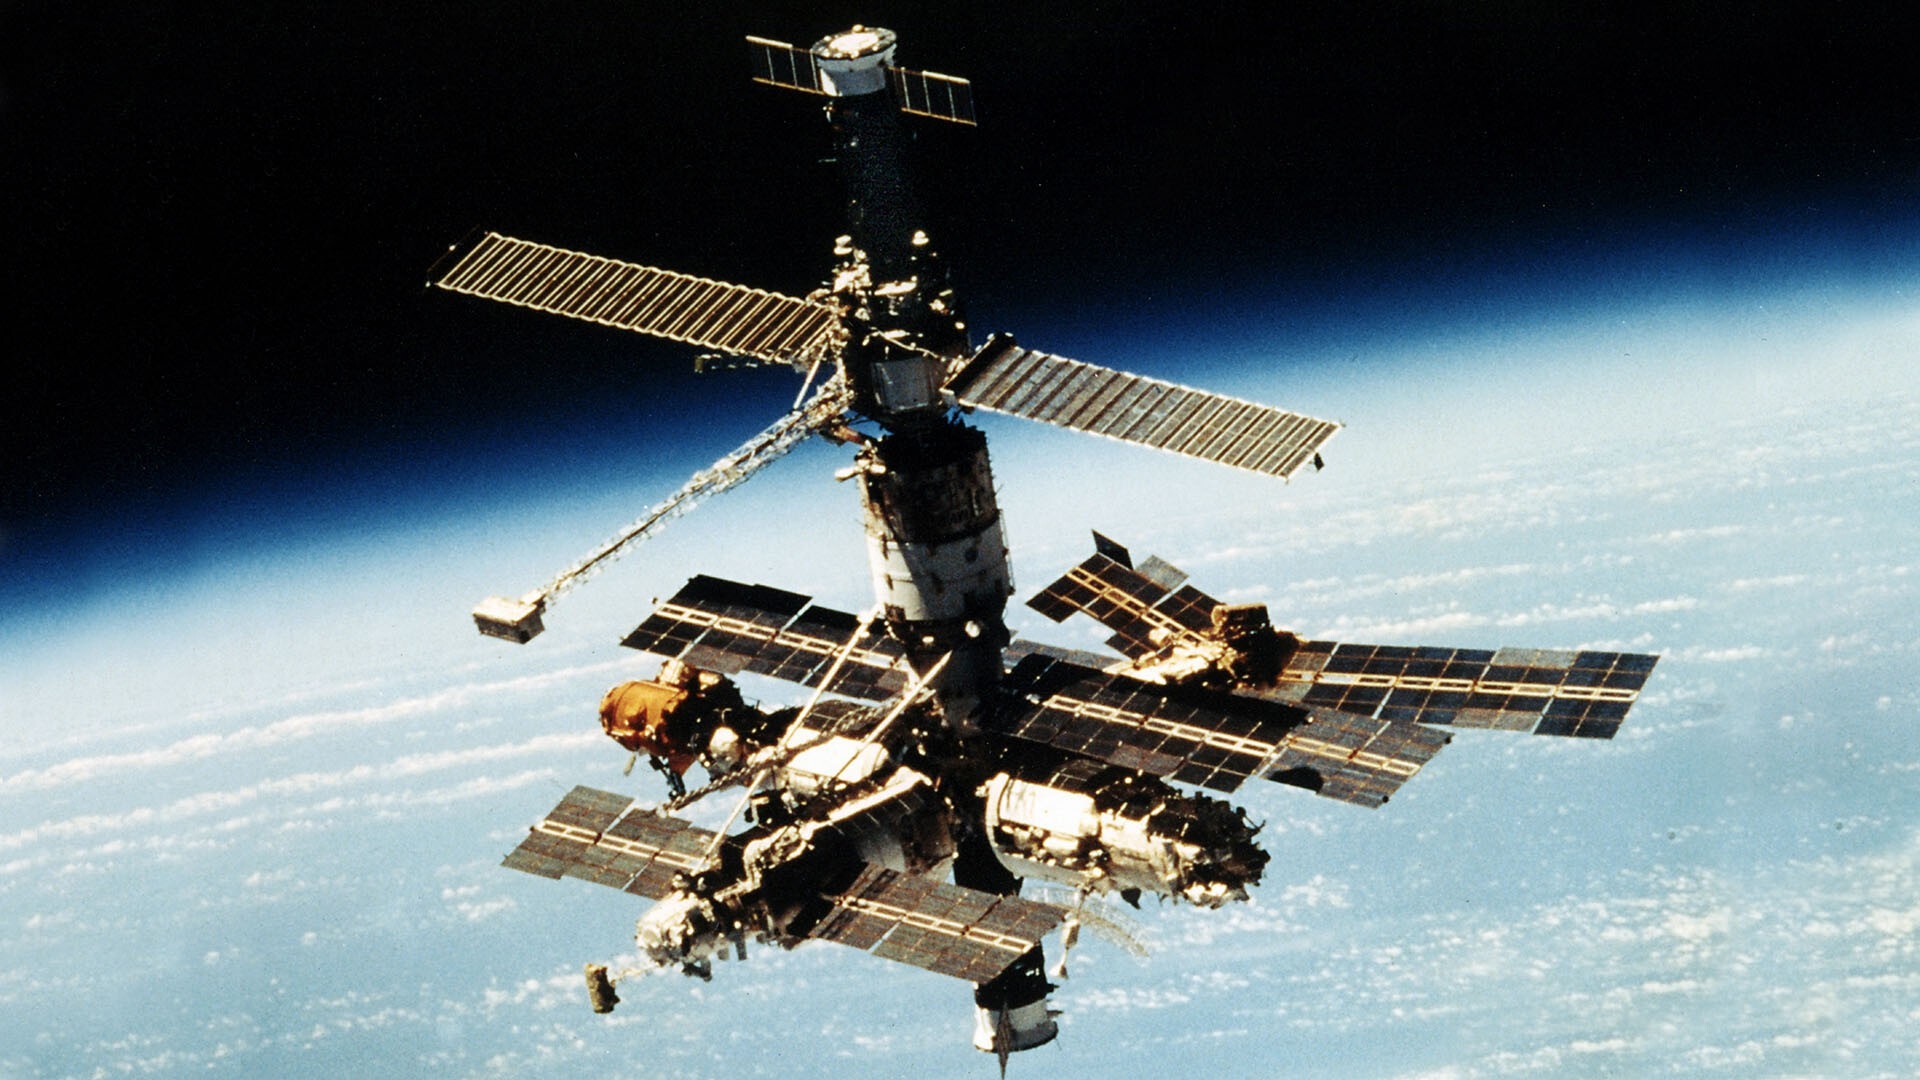 Mir. Станция мир 1986. Орбитальная научная станция мир. 1986 Запущена Советская орбитальная станция «мир». Первая многомодульная орбитальная станция («мир»)..